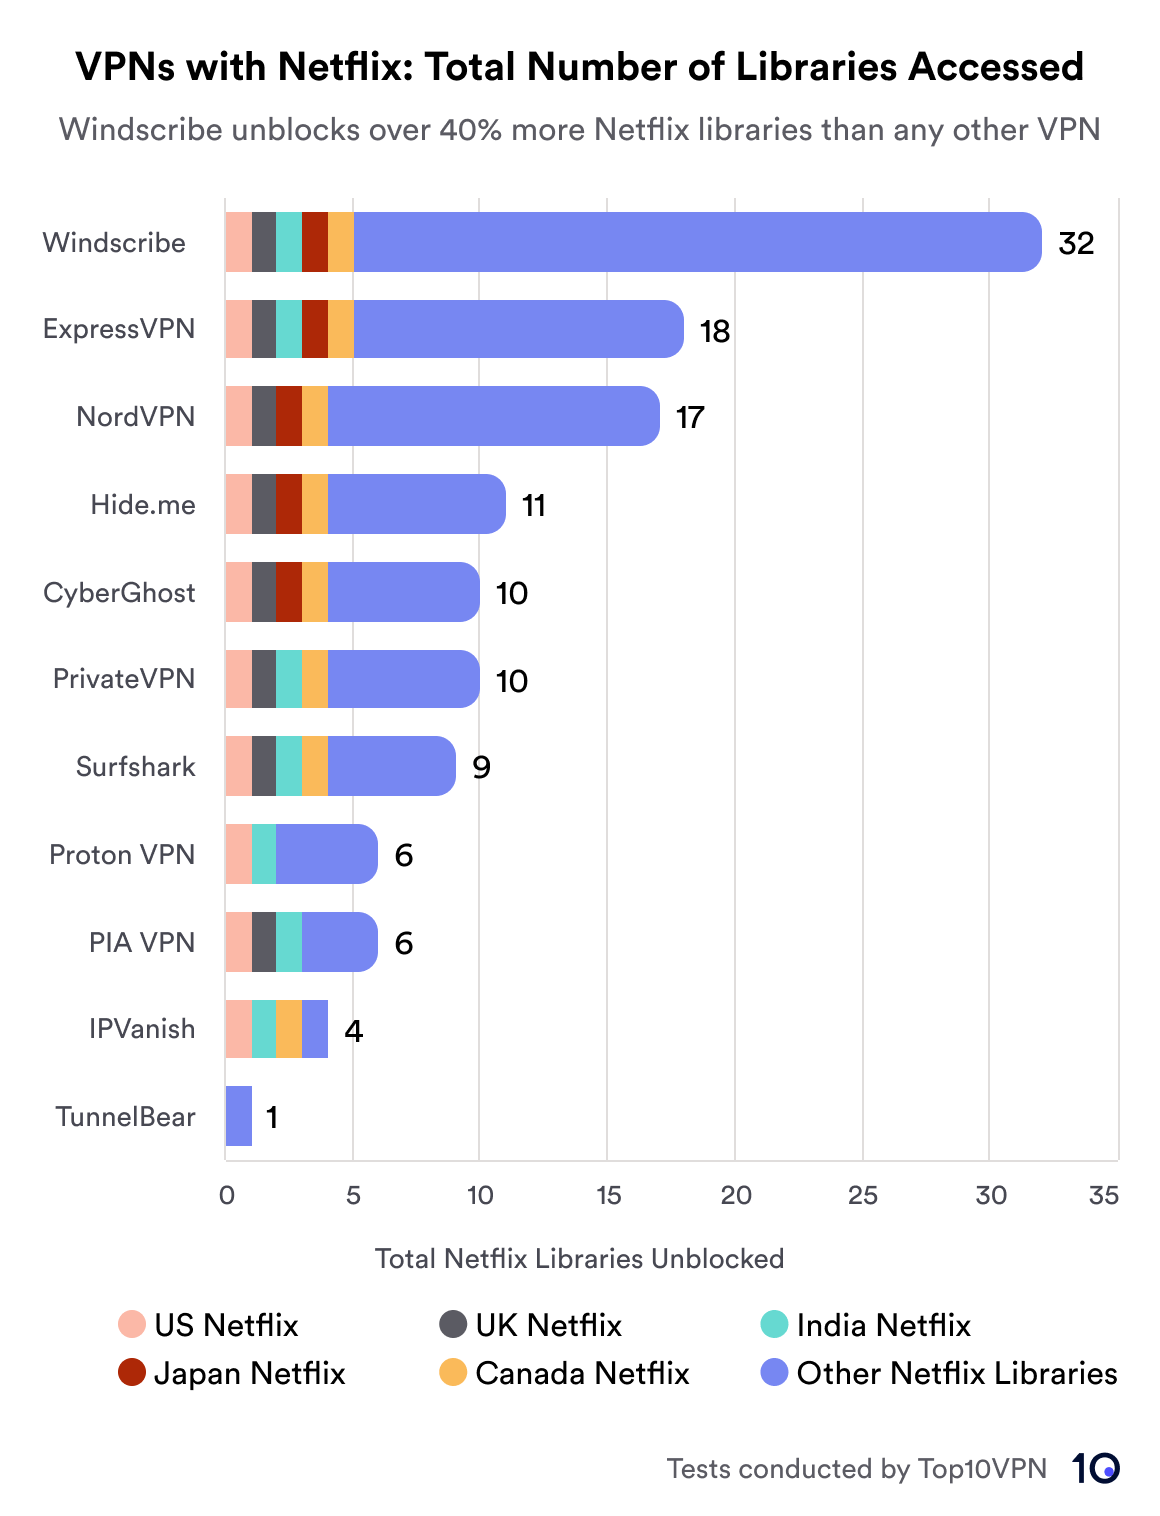 액세스한 총 Netflix 라이브러리 수를 기준으로 VPN 서비스를 비교하는 막대형 차트입니다. Windscribe는 32개의 라이브러리로 선두를 달리고 있으며 ExpressVPN과 NordVPN이 각각 18개와 17개로 그 뒤를 따르고 있습니다. 차트에는 미국, 영국, 일본, 캐나다, 인도 등과 같은 지역을 나타내는 키가 포함되어 있습니다.